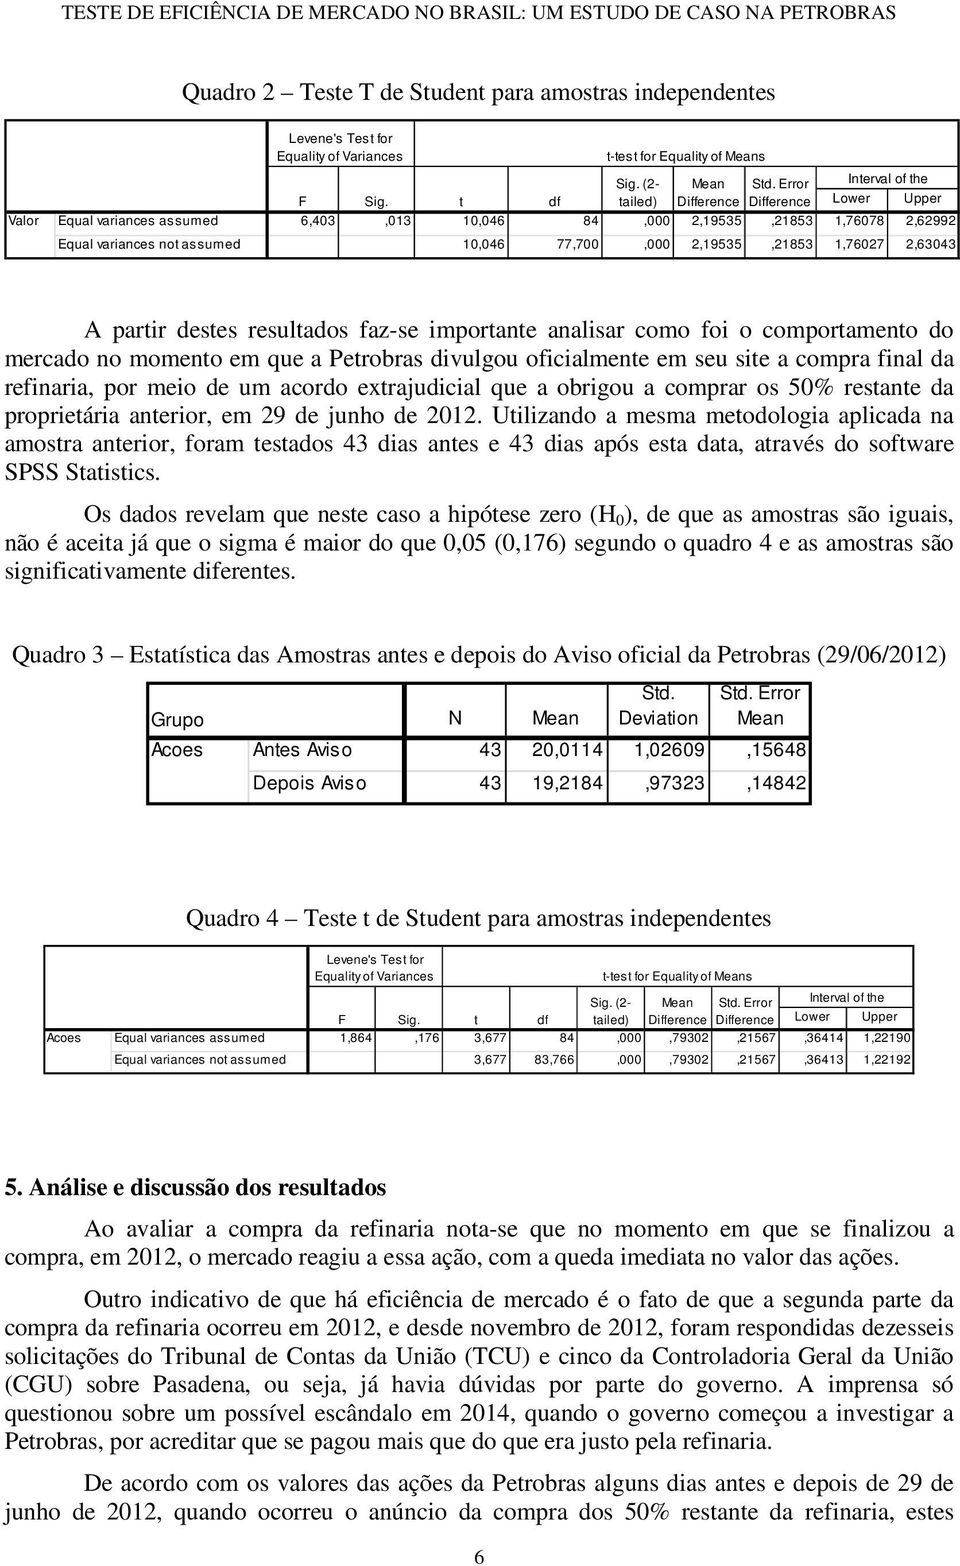 2,63043 A partir destes resultados faz-se importante analisar como foi o comportamento do mercado no momento em que a Petrobras divulgou oficialmente em seu site a compra final da refinaria, por meio